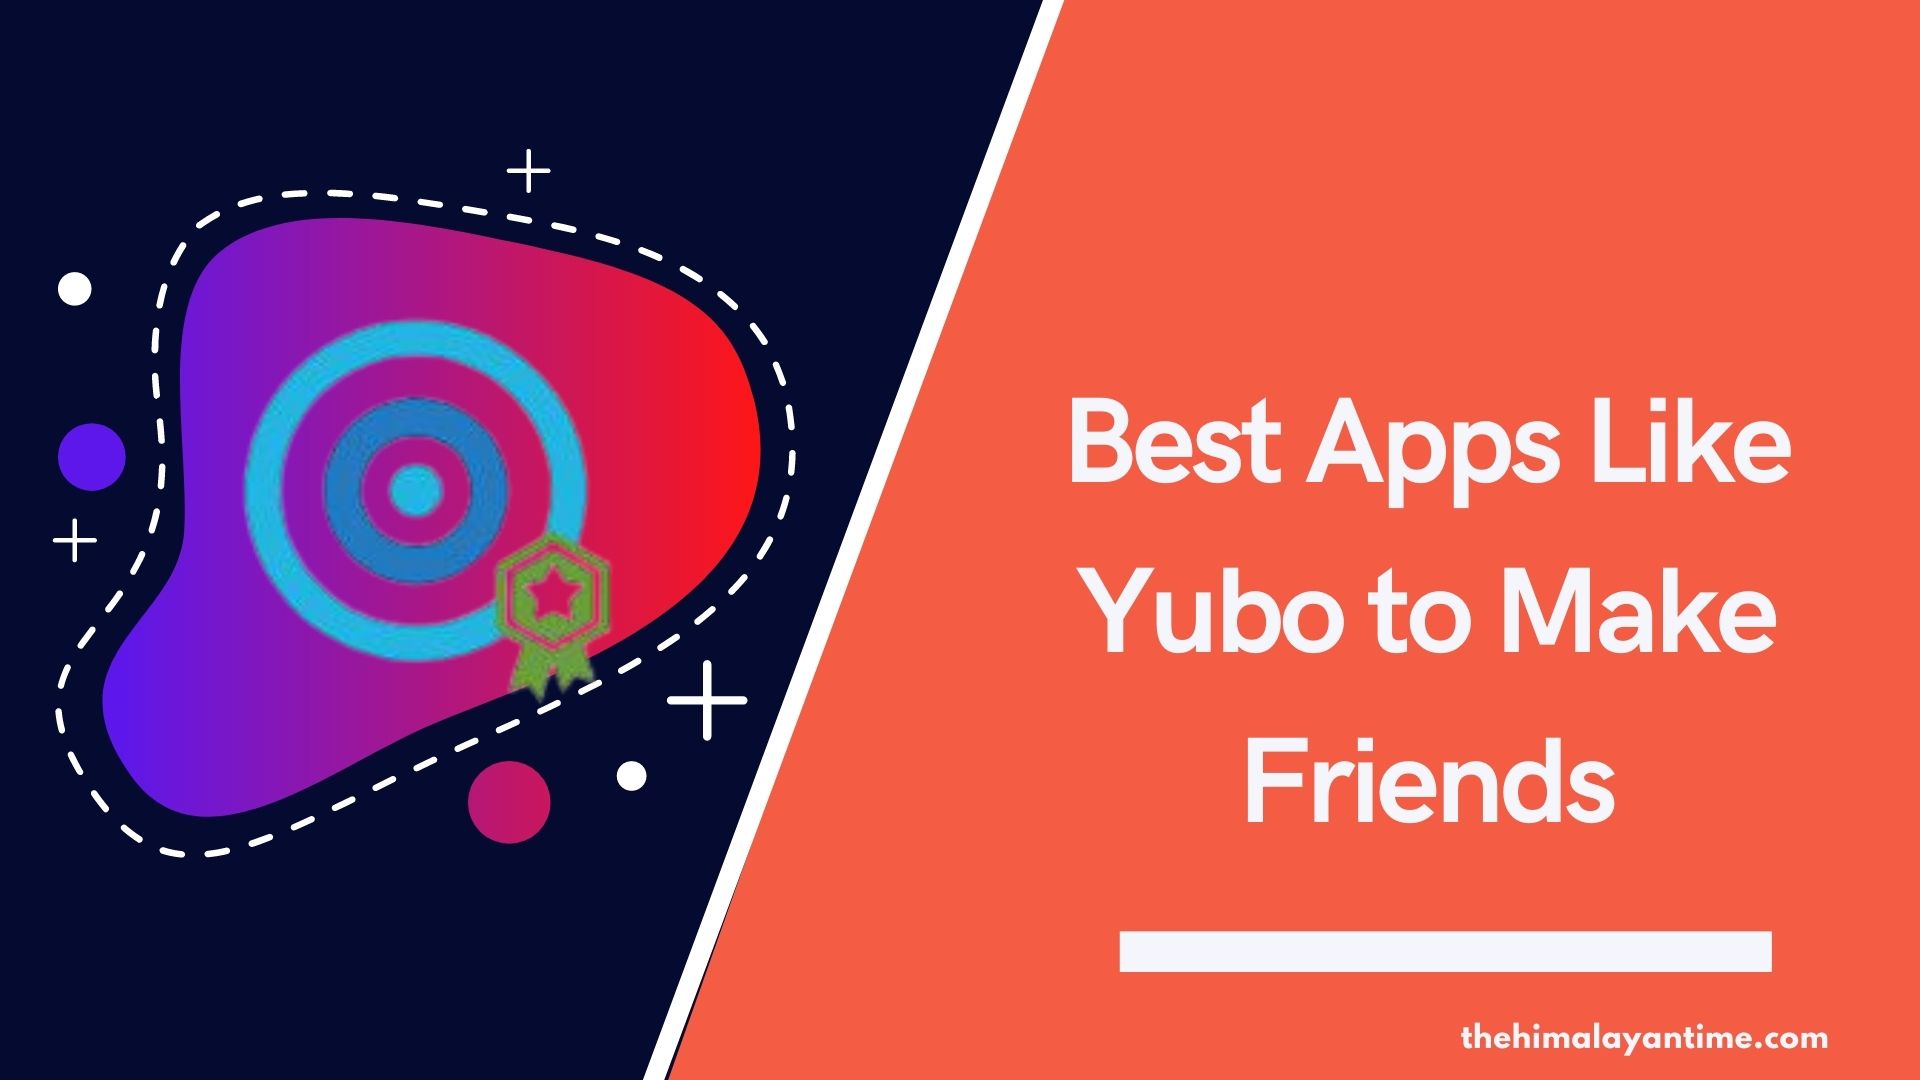 Best Apps Like Yubo to Make Friends